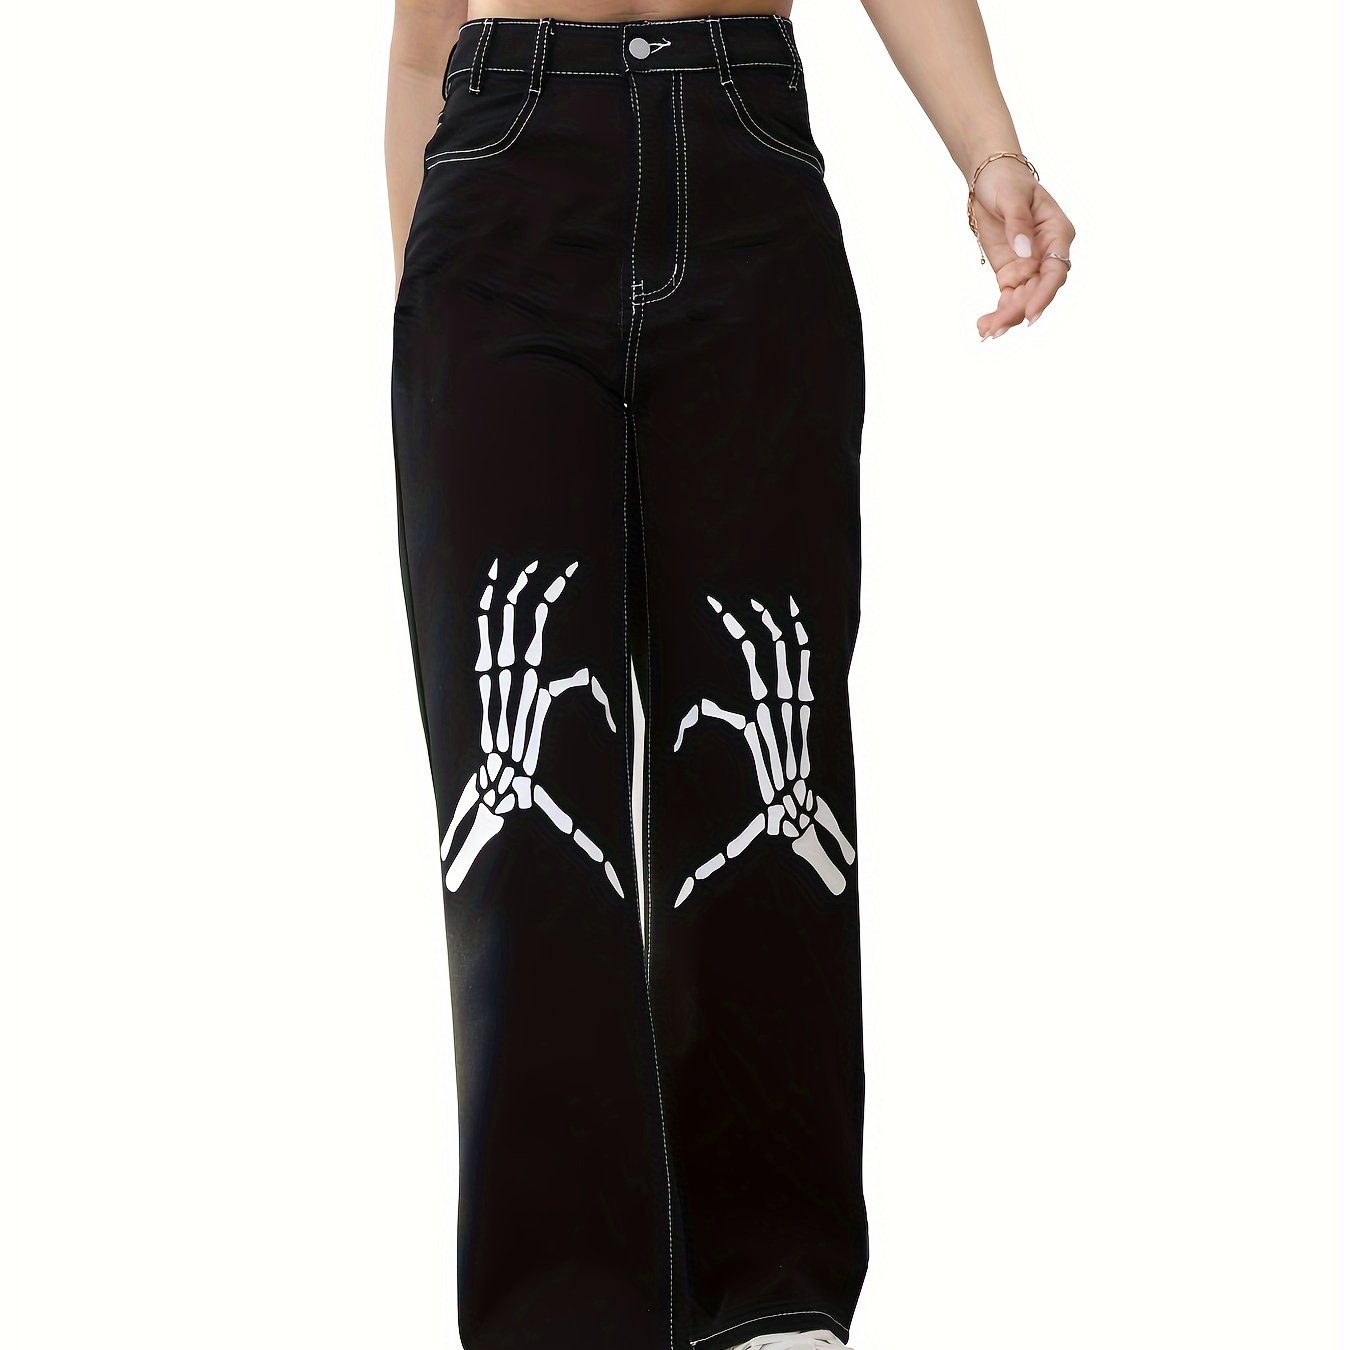 Black Skeleton Hands Print Loose Denim Pants - ShopperBoard